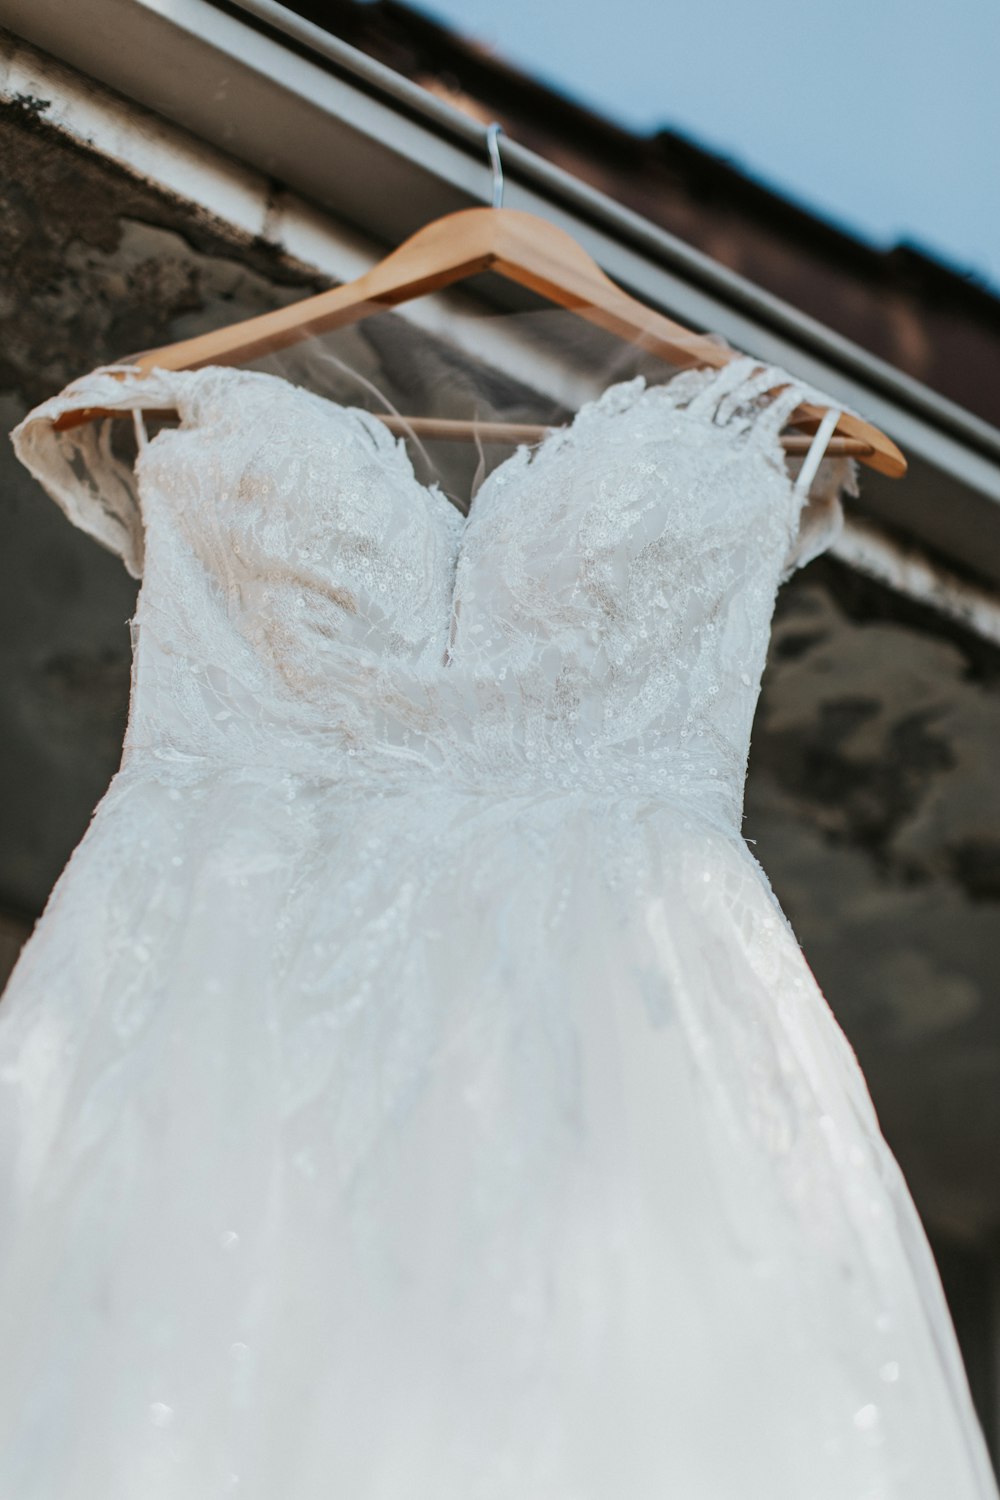 a wedding dress hanging on a wooden hanger